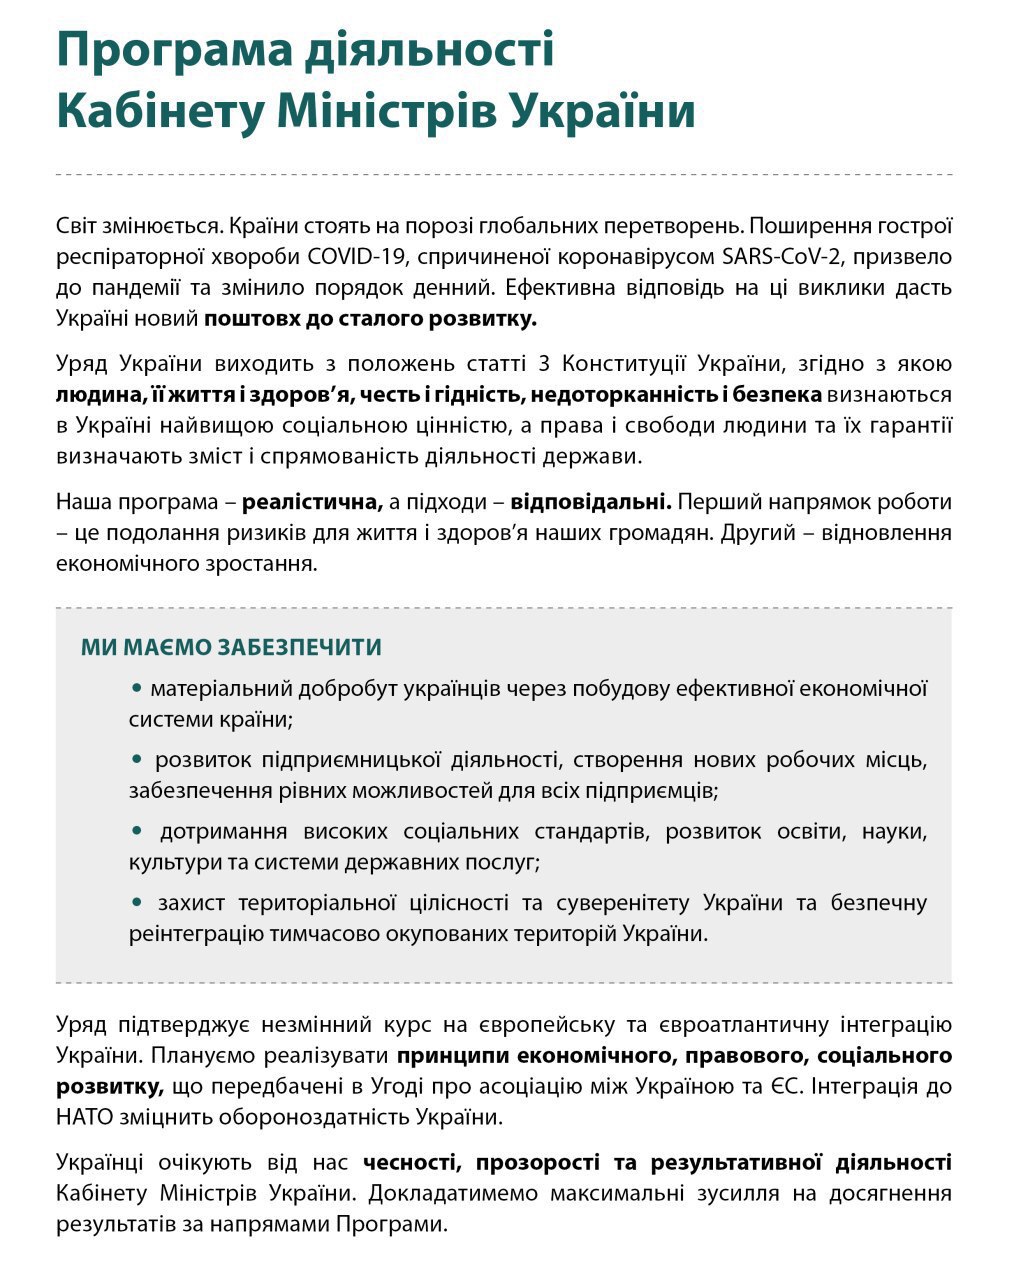 Прграмма деятельности Кабинета министров. Фото: Telegram / Денис Шмыгаль